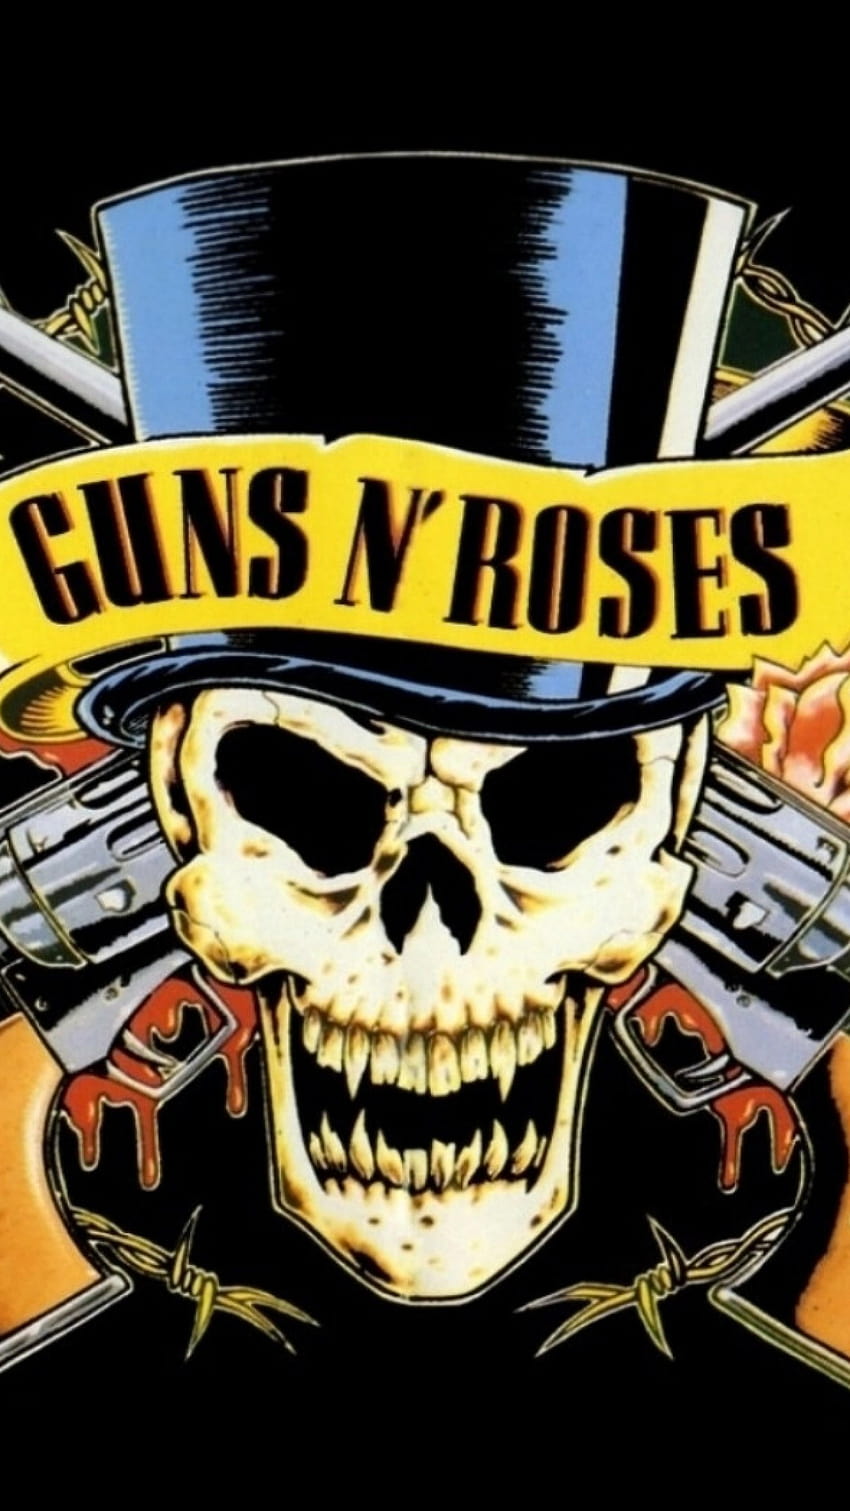 Vista previa Guns N Roses, Revólveres, Calavera, Cilindro, gnr fondo de pantalla del teléfono